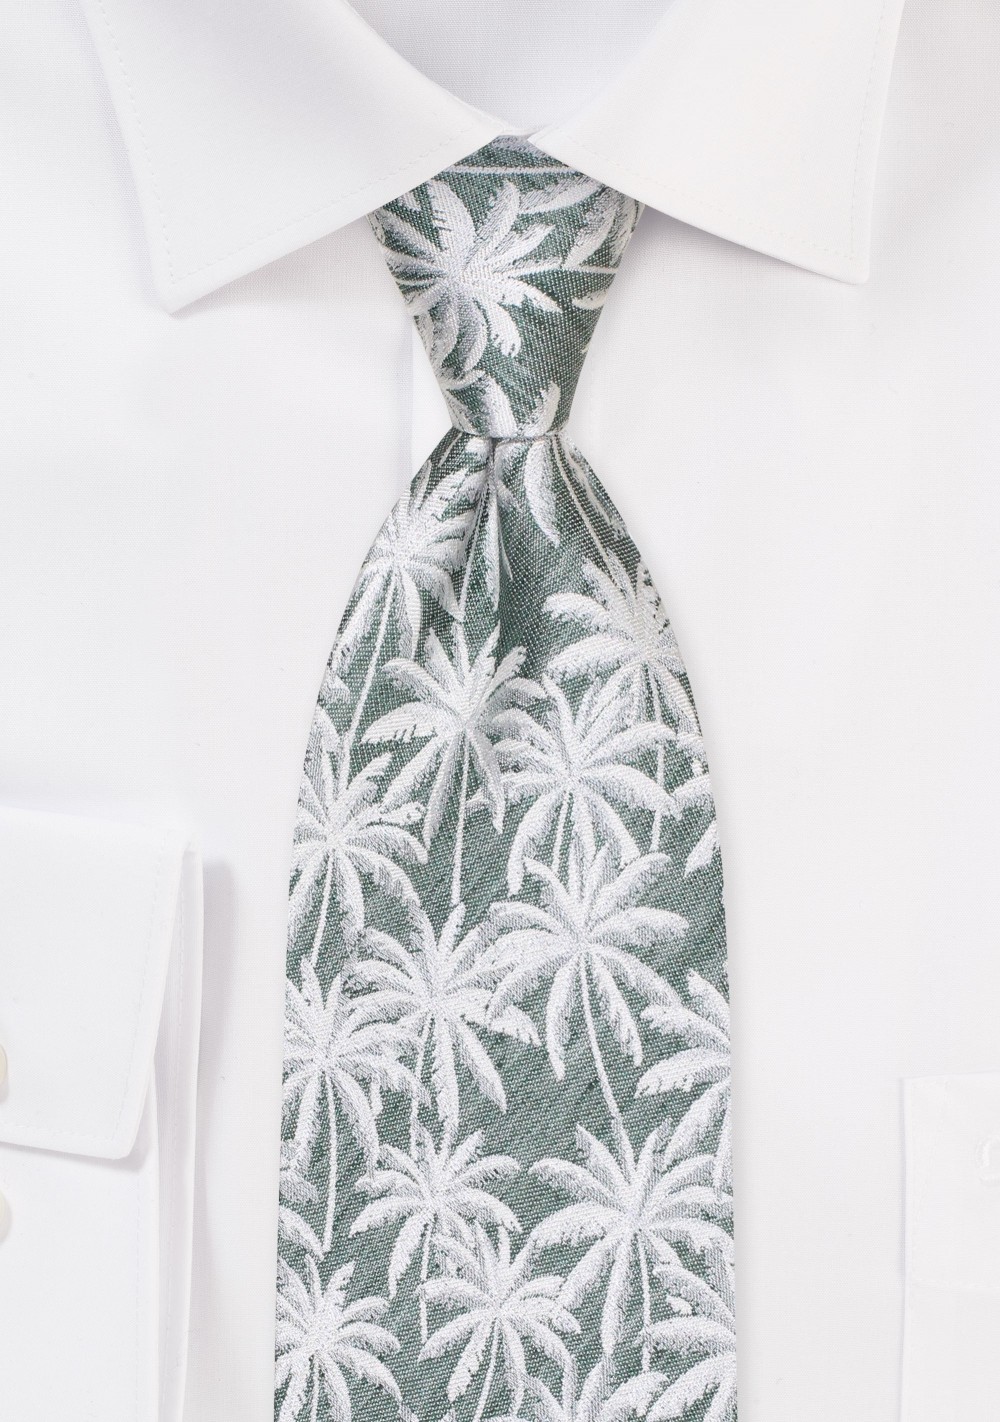 Palm Tree Linen Tie in XL Length